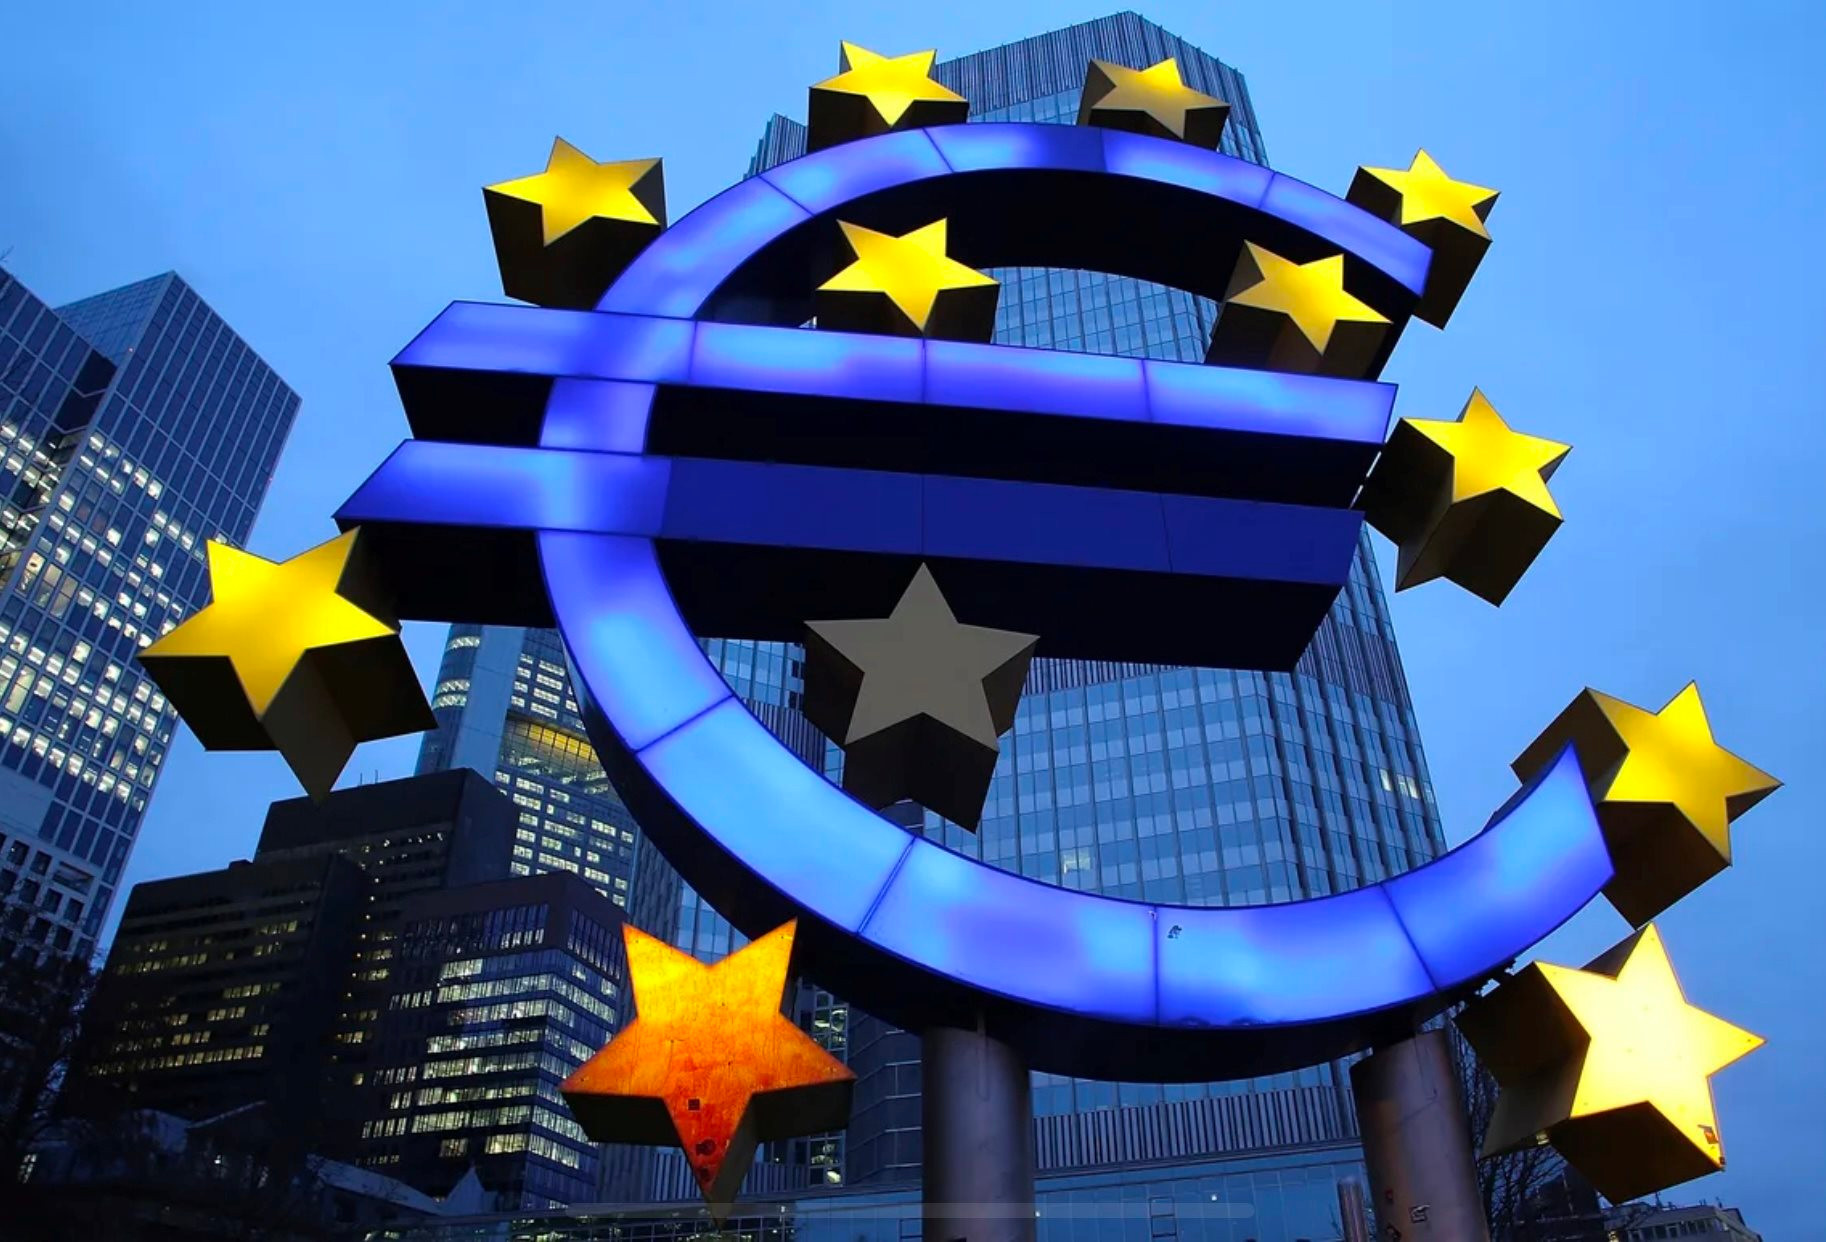 Lạm phát tháng 4 và GDP quý 1 khu vực đồng euro chính được công bố: ECB có thể đi trước FED trong việc hạ lãi suất?- Ảnh 1.